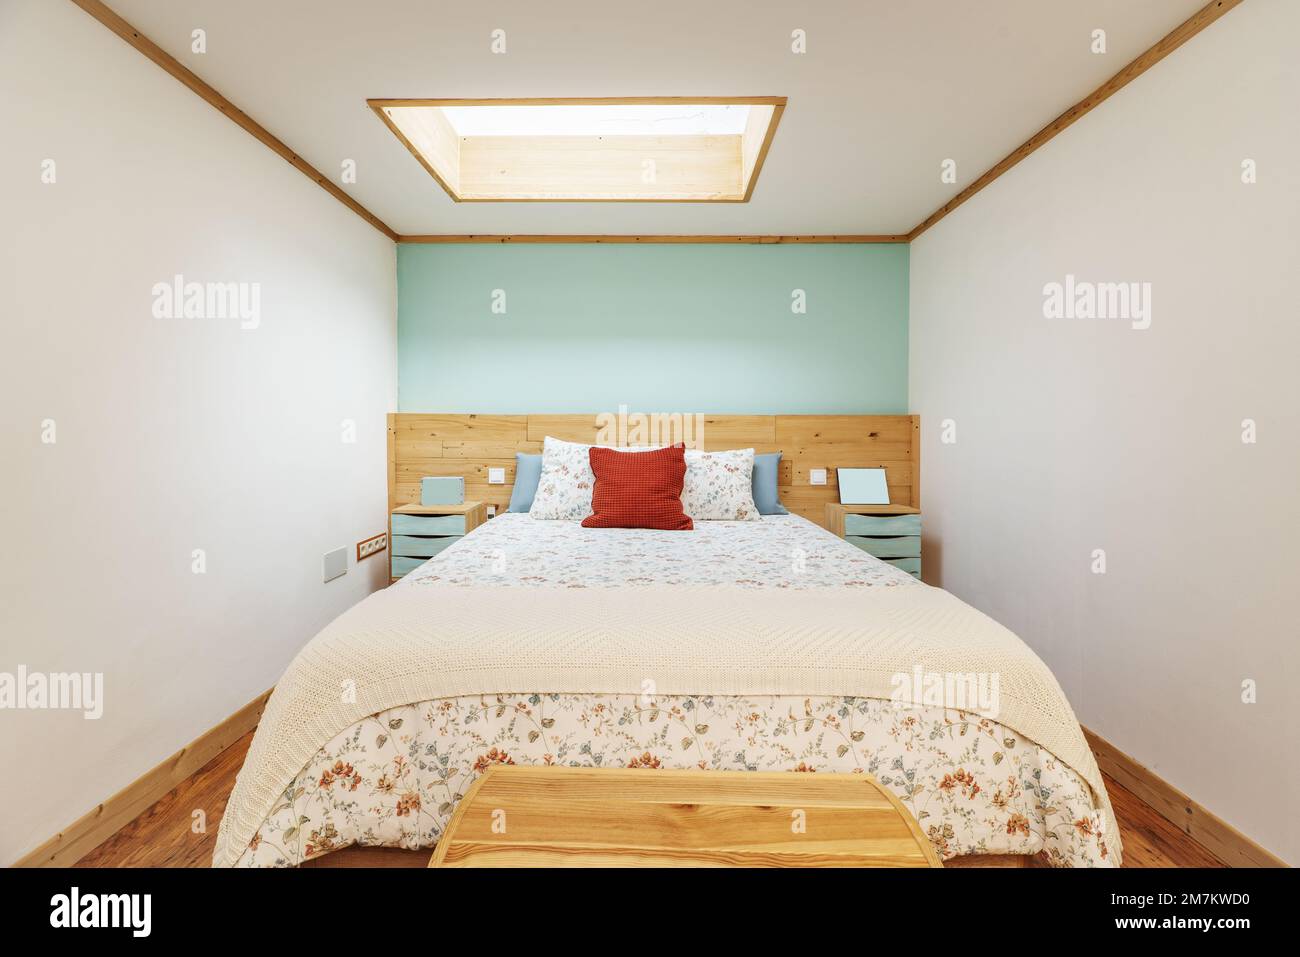 Chambre avec lit double, tête de lit en pin assortie, coffre au pied, courtepointe et coussins à motifs floraux Banque D'Images